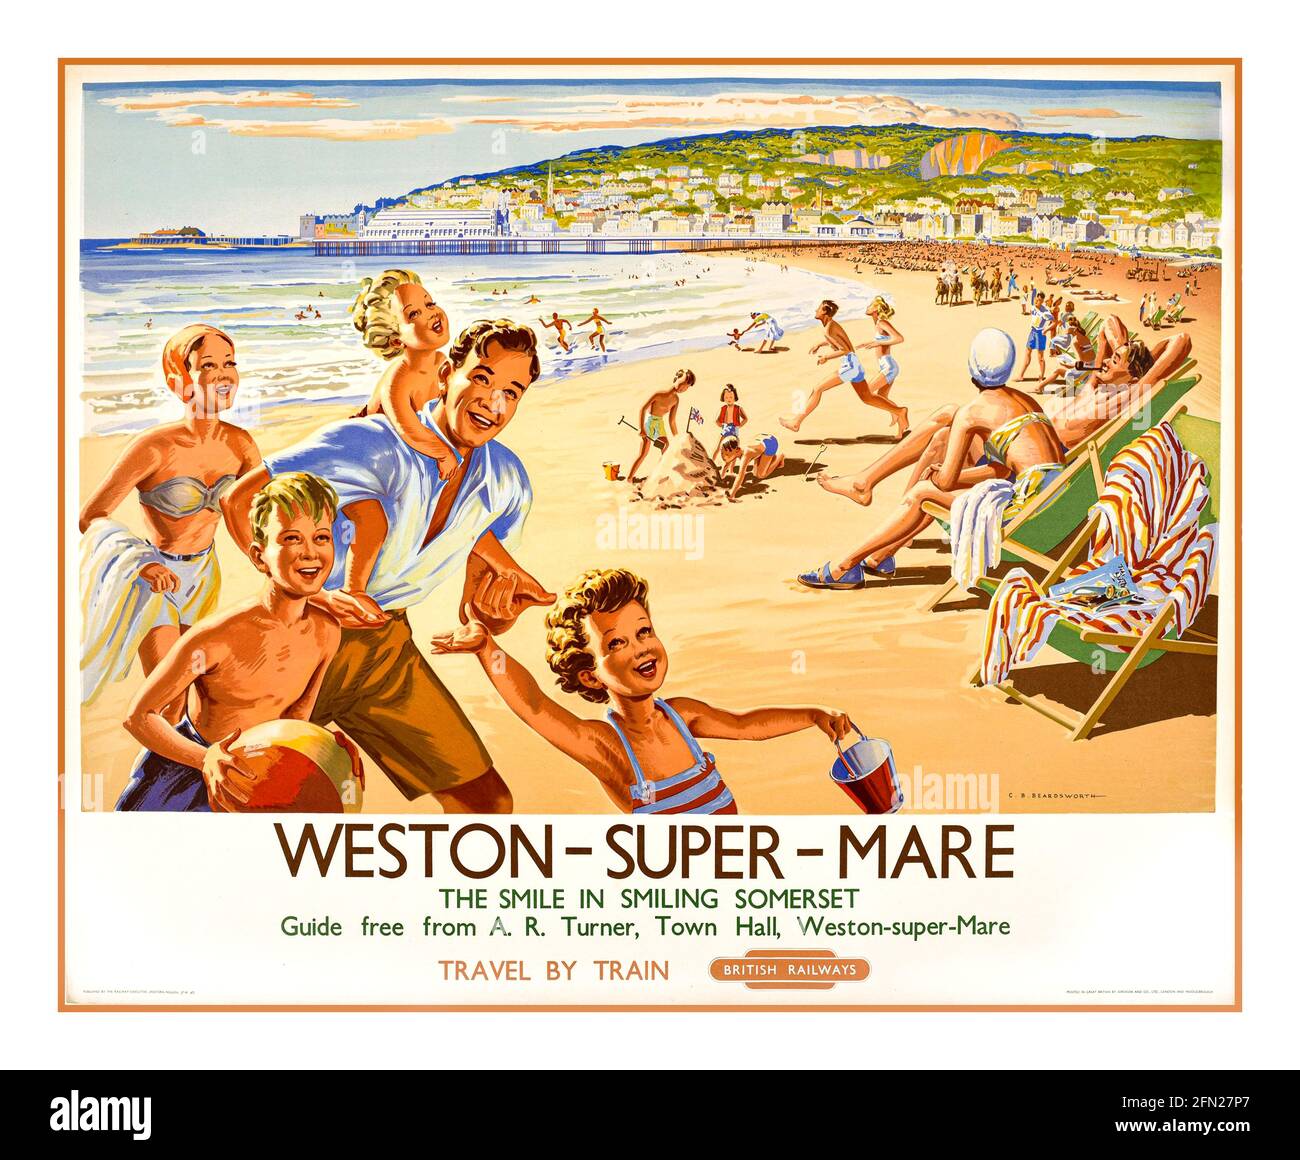 Vintage 1950 Weston-super-Mare Railway Poster 1959 Künstler: C B Beardsworth Weston-super-Mare. Das Lächeln im lächelnden Somerset. Führung frei von A.R. Turner, Rathaus, Weston-super-Mare. Anreise mit dem Zug. British Railways. Stockfoto